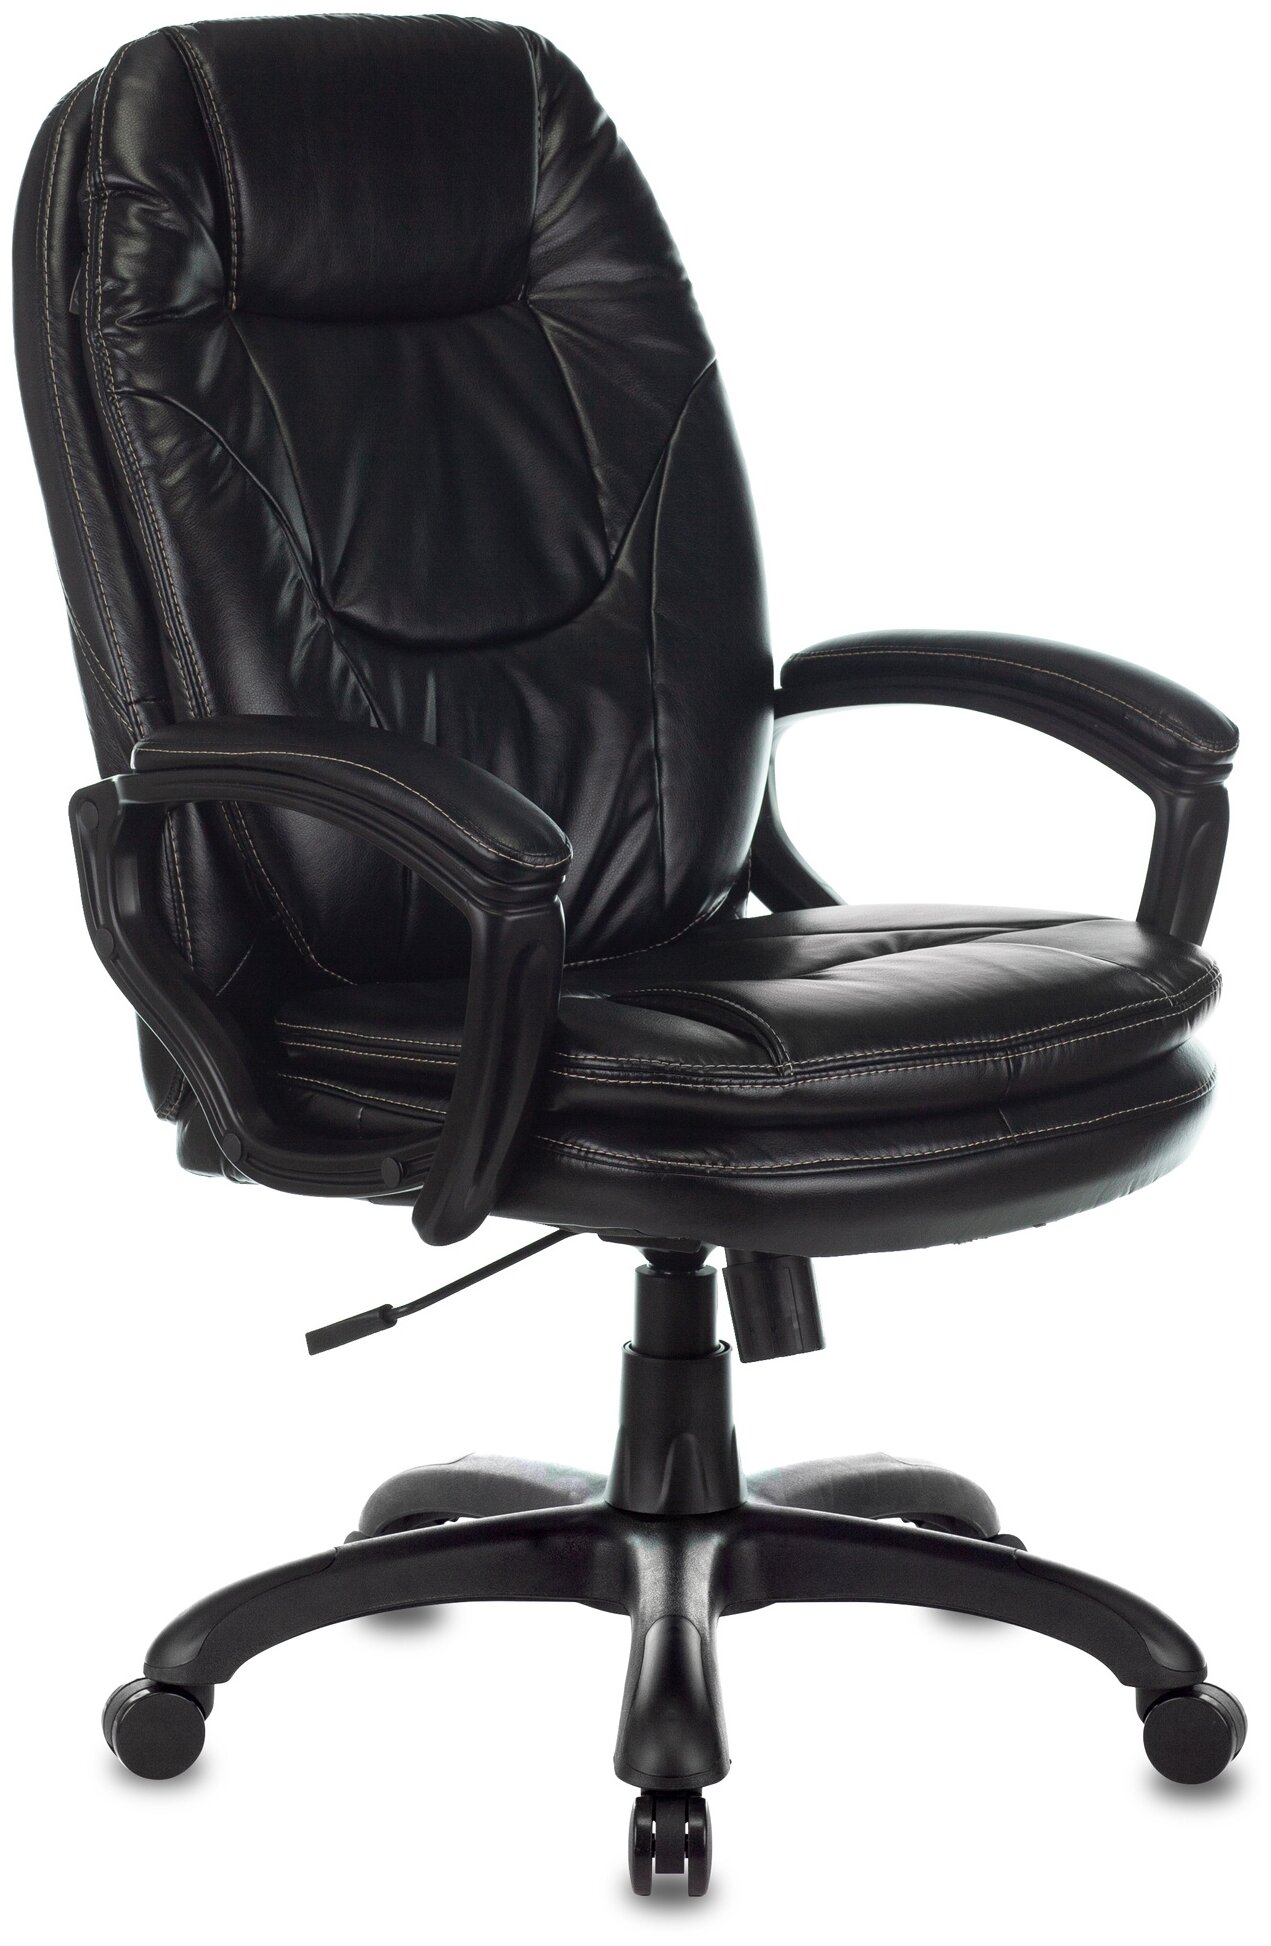 Компьютерное кресло Бюрократ CH-868N для руководителя, обивка: искусственная кожа, цвет: черный